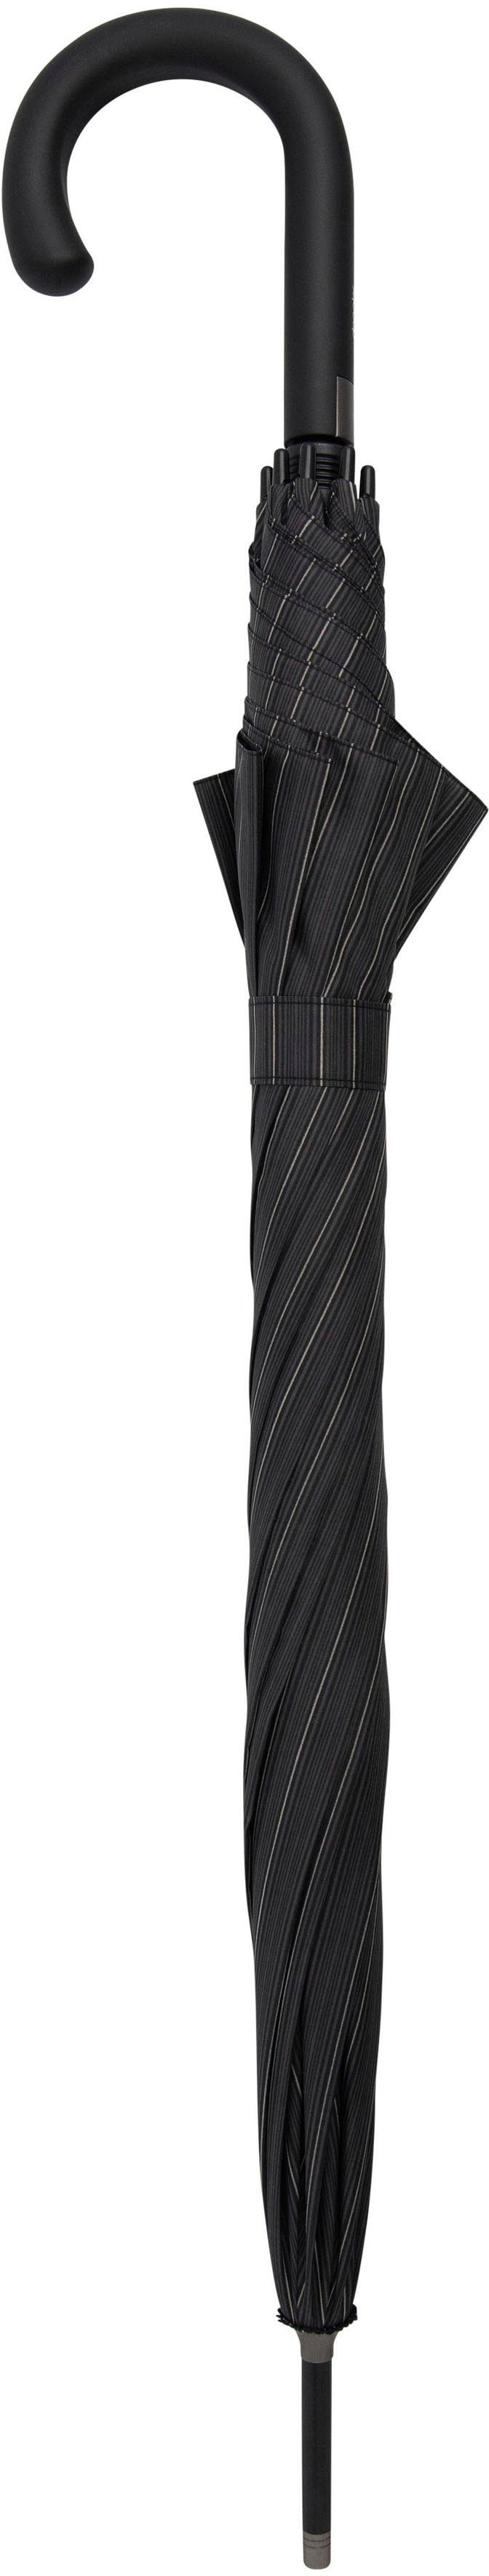 doppler® Langregenschirm Fiber Flex AC Partnerschirm stripe, classy Big